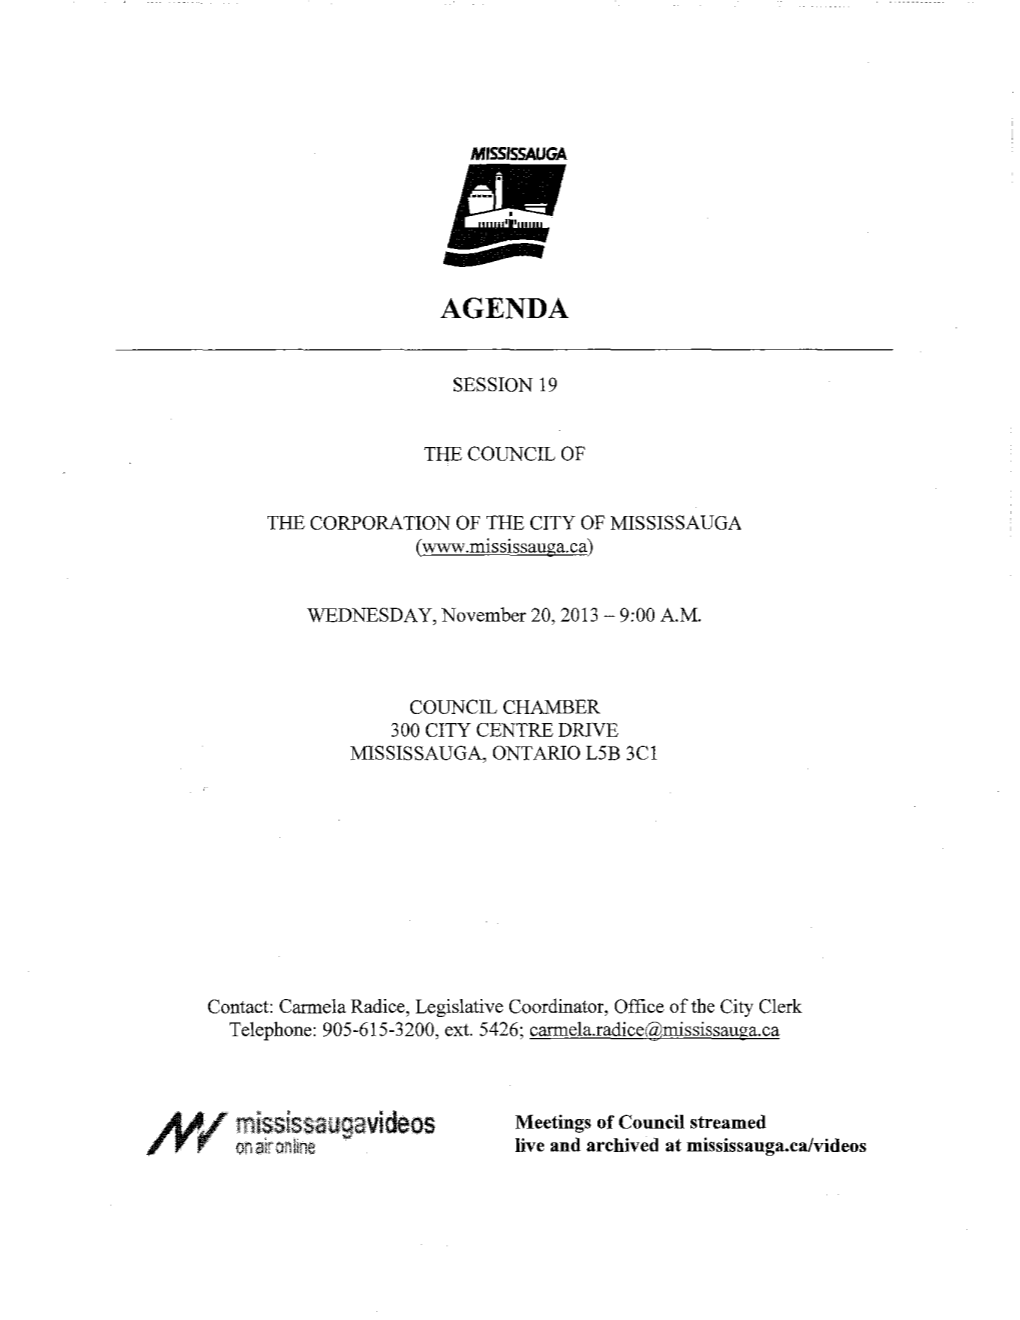 Council Agenda - 2 - November 20, 2013